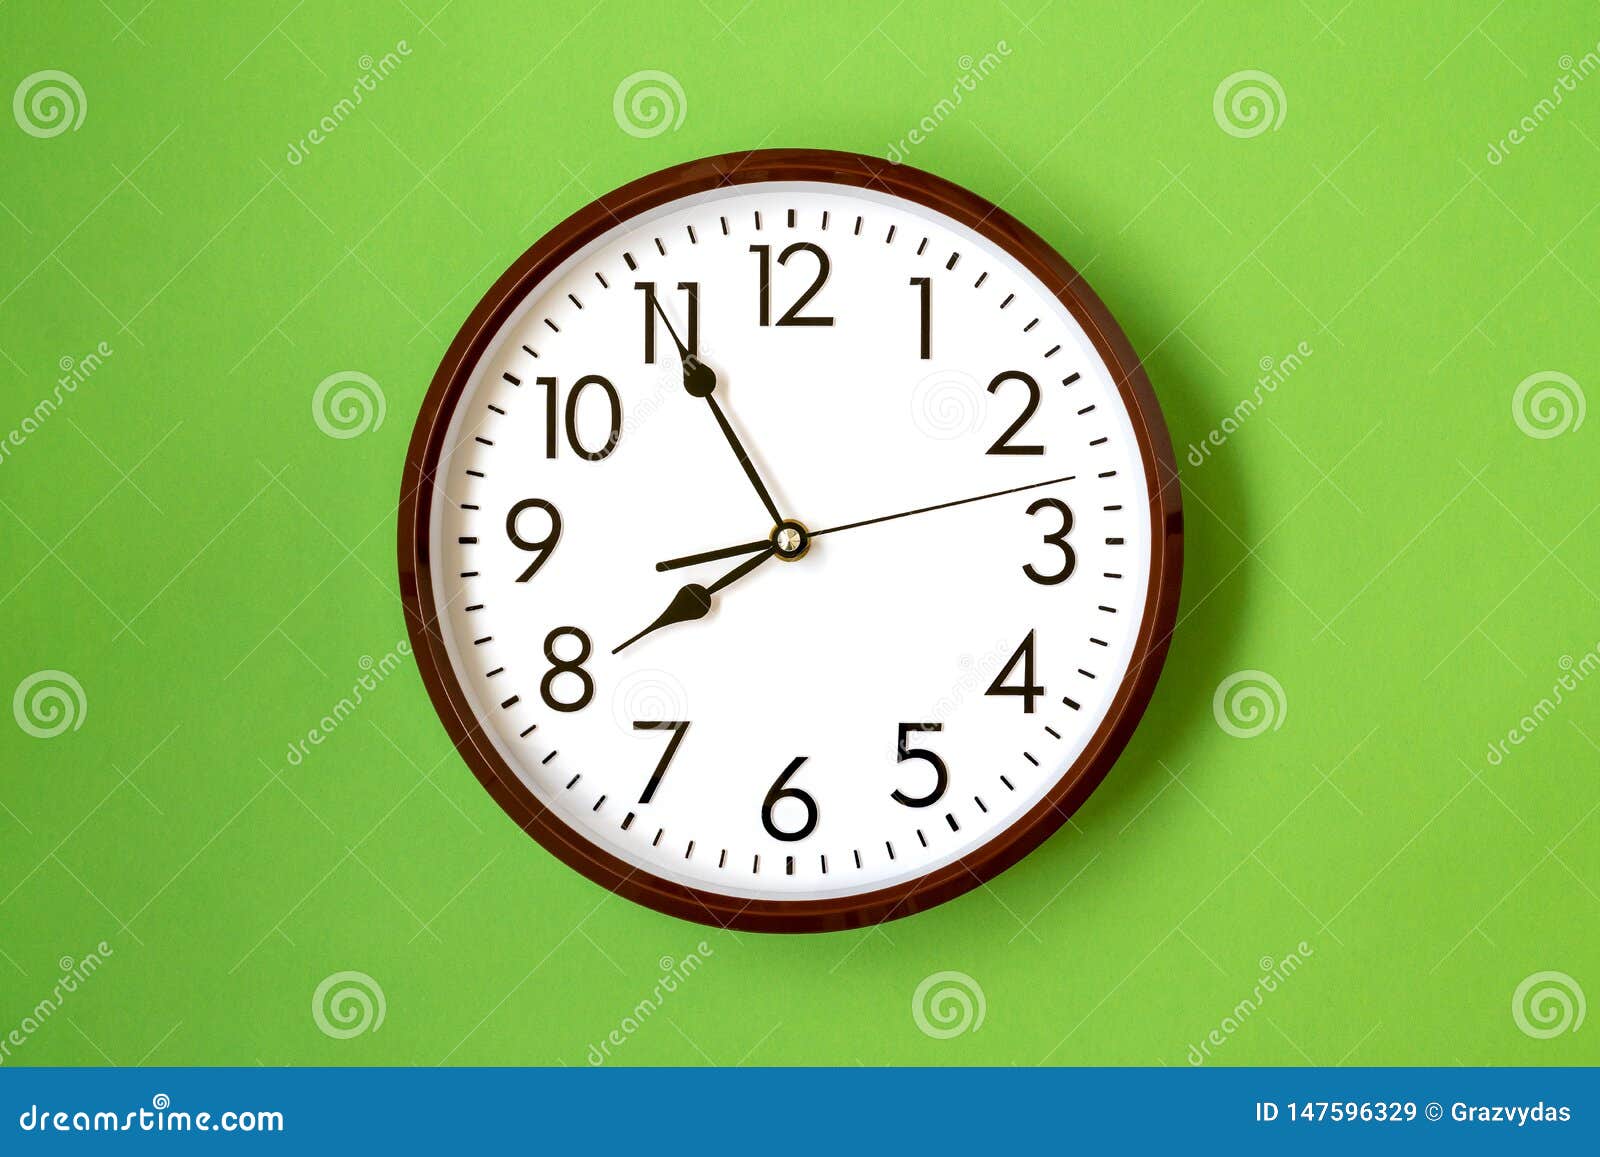 Часы остановились на 7. 7 Часов. Часы 7. Часы рисунок. Часы показывают 7 часов.